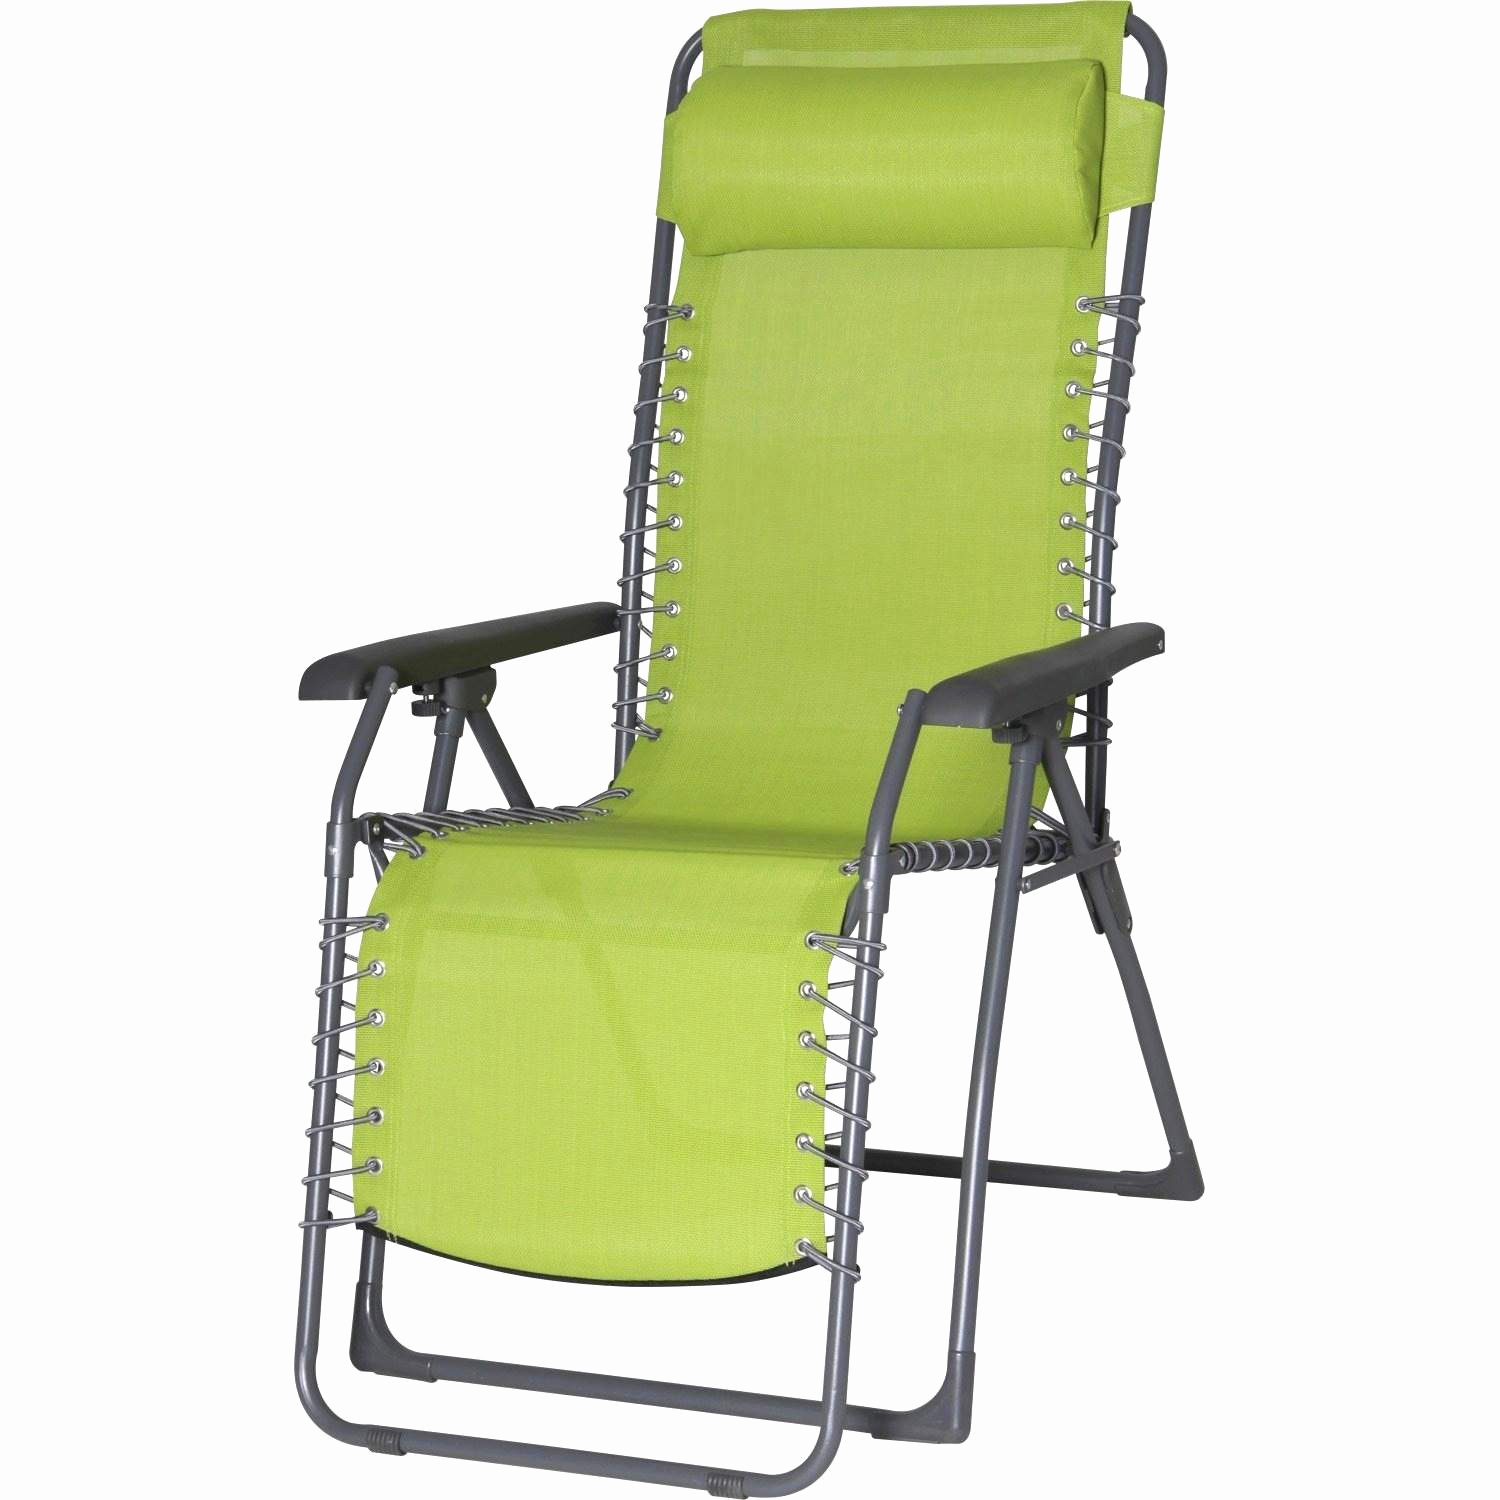 chaise acier jardin charmant chaises longues bois chaise blanche en bois bel chaise blanche 0d of chaise acier jardin